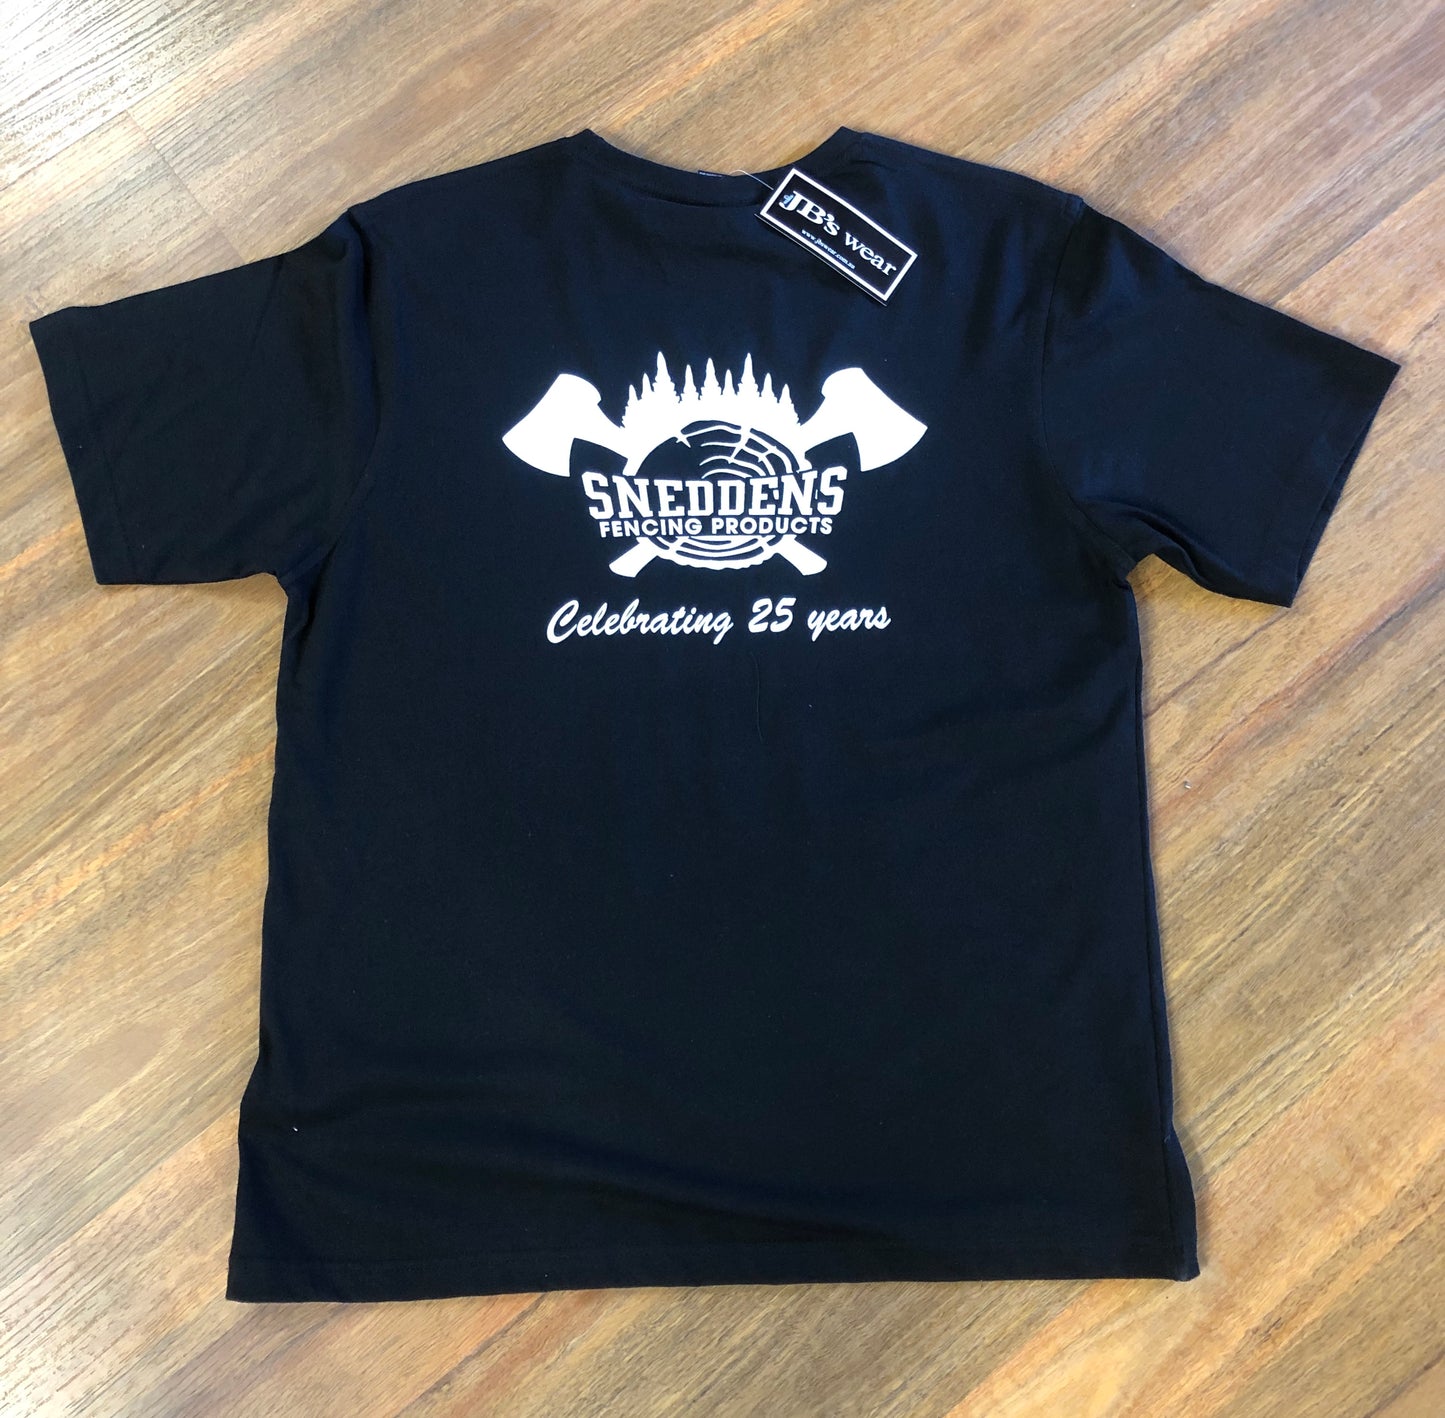 Snedden’s Fencing Products T Shirt Established 1994 Black